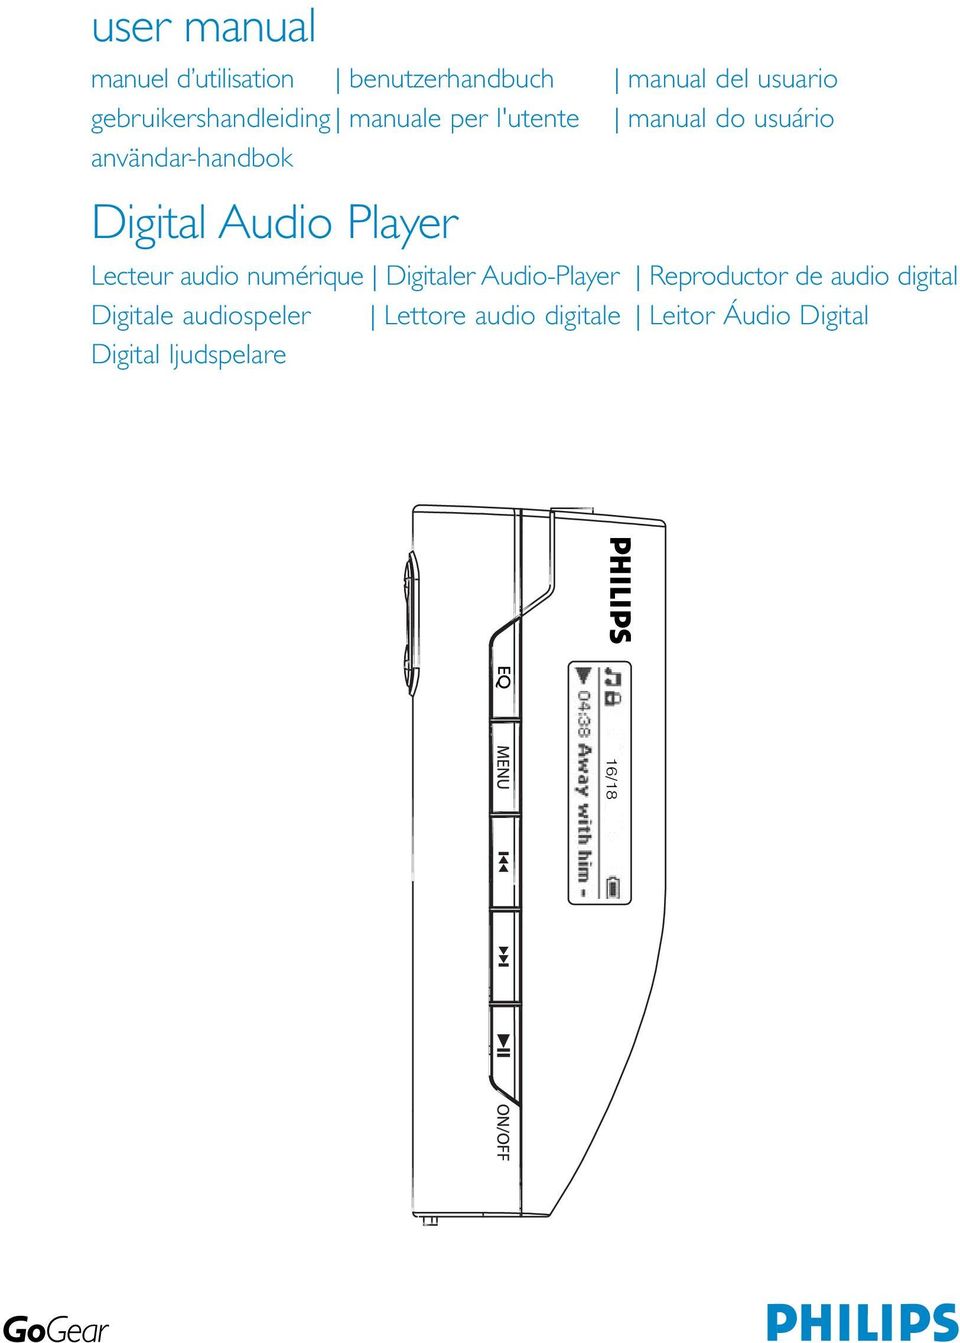 Digital Audio Player Lecteur audio numérique Digitaler Audio-Player Reproductor de